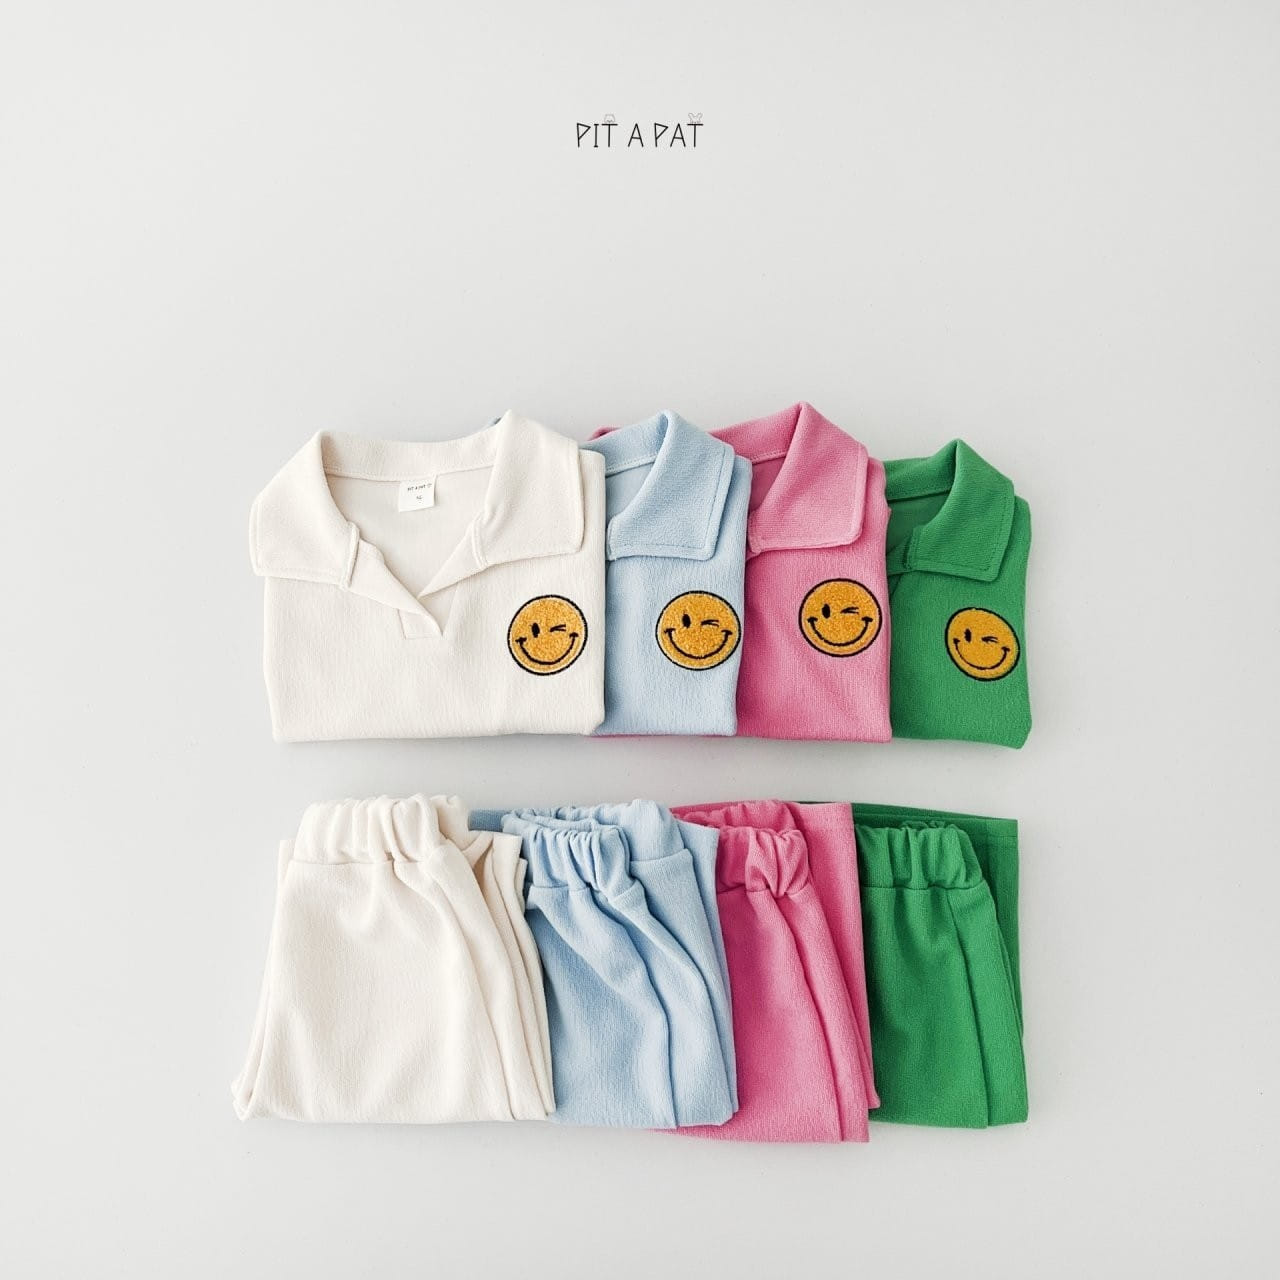 Pitapat - Korean Children Fashion - #toddlerclothing - Smiley Terry Top Bottom Set - 10